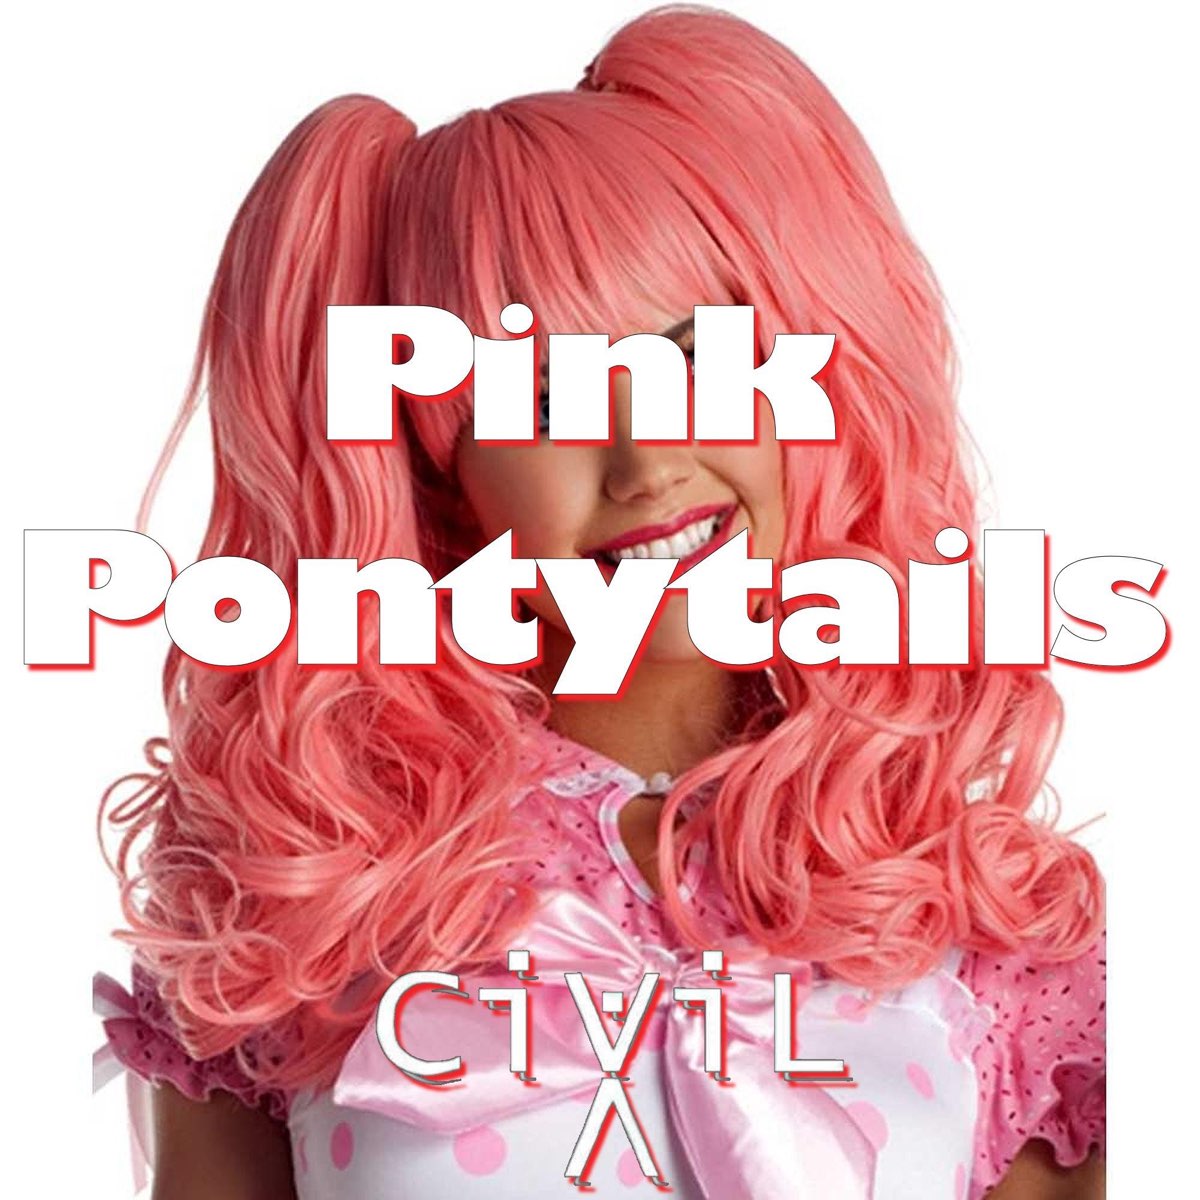 Слушать розовый май. Сингл Пинк. Born Pink альбом. Pink слушаю музыку. "Sinhour ponytails Pink".